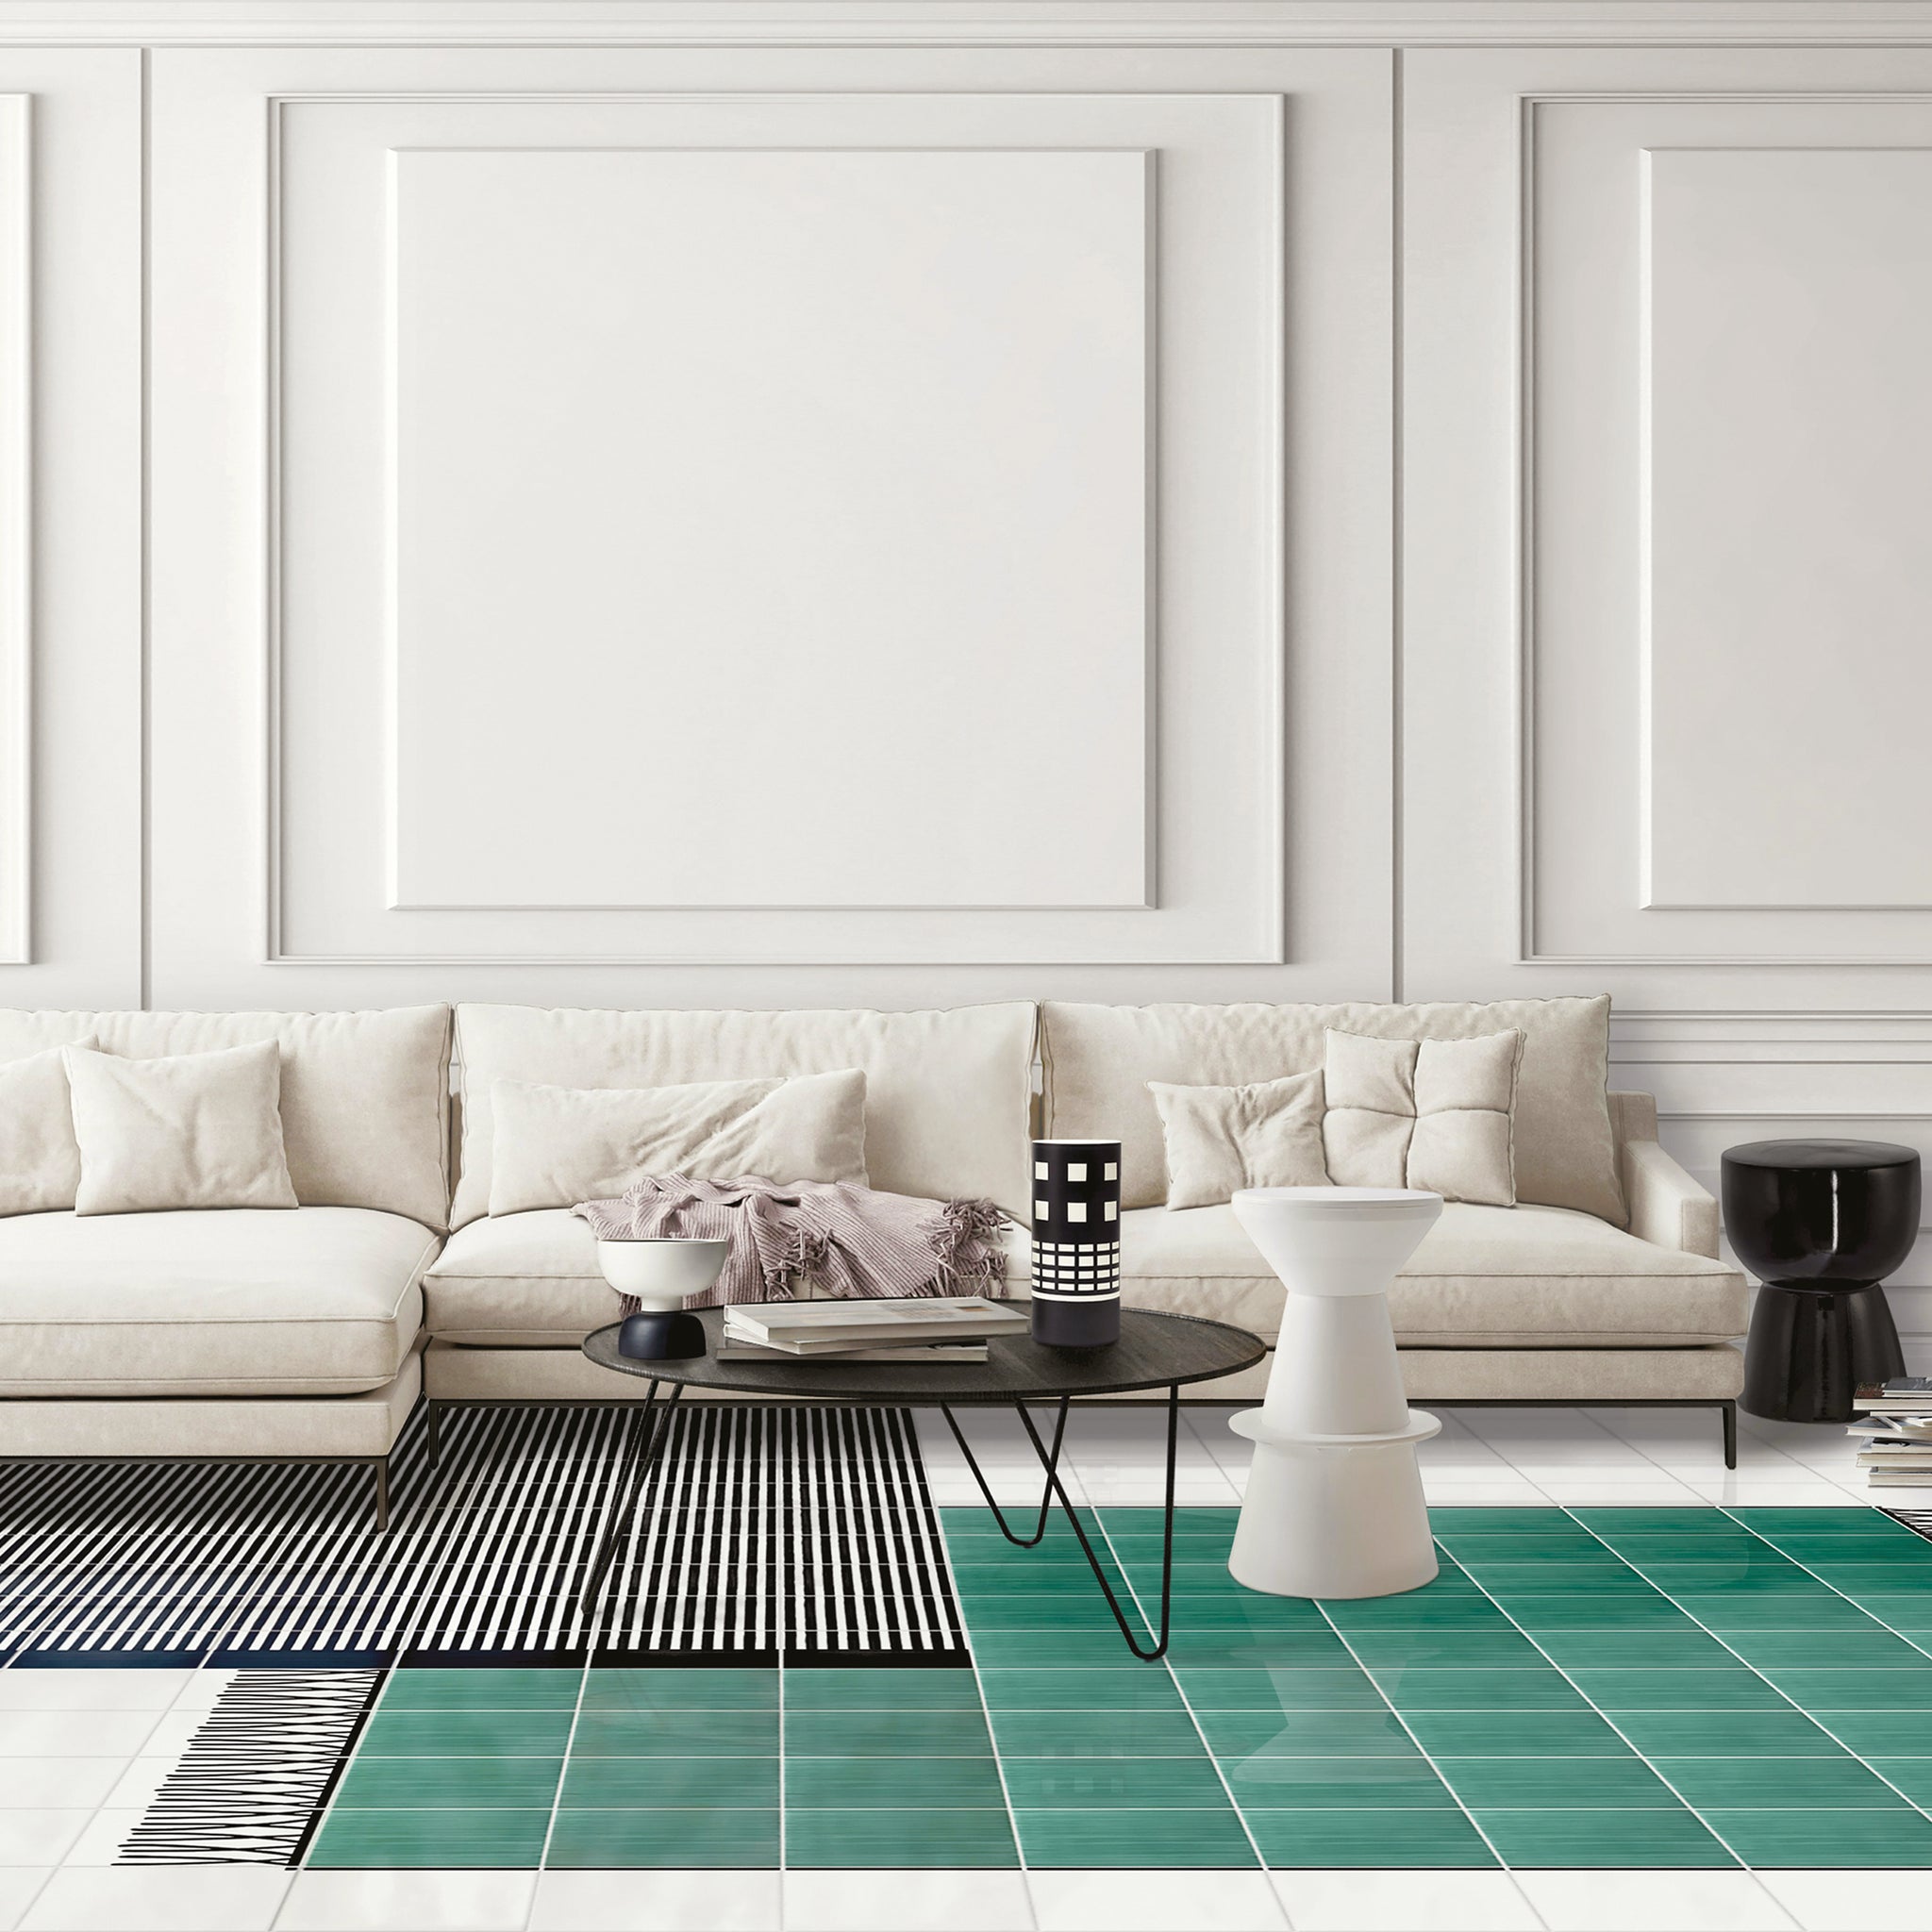 Carpet Green Ceramic Composition by Giuliano Andrea dell’Uva 200 x 100 - Alternative view 3